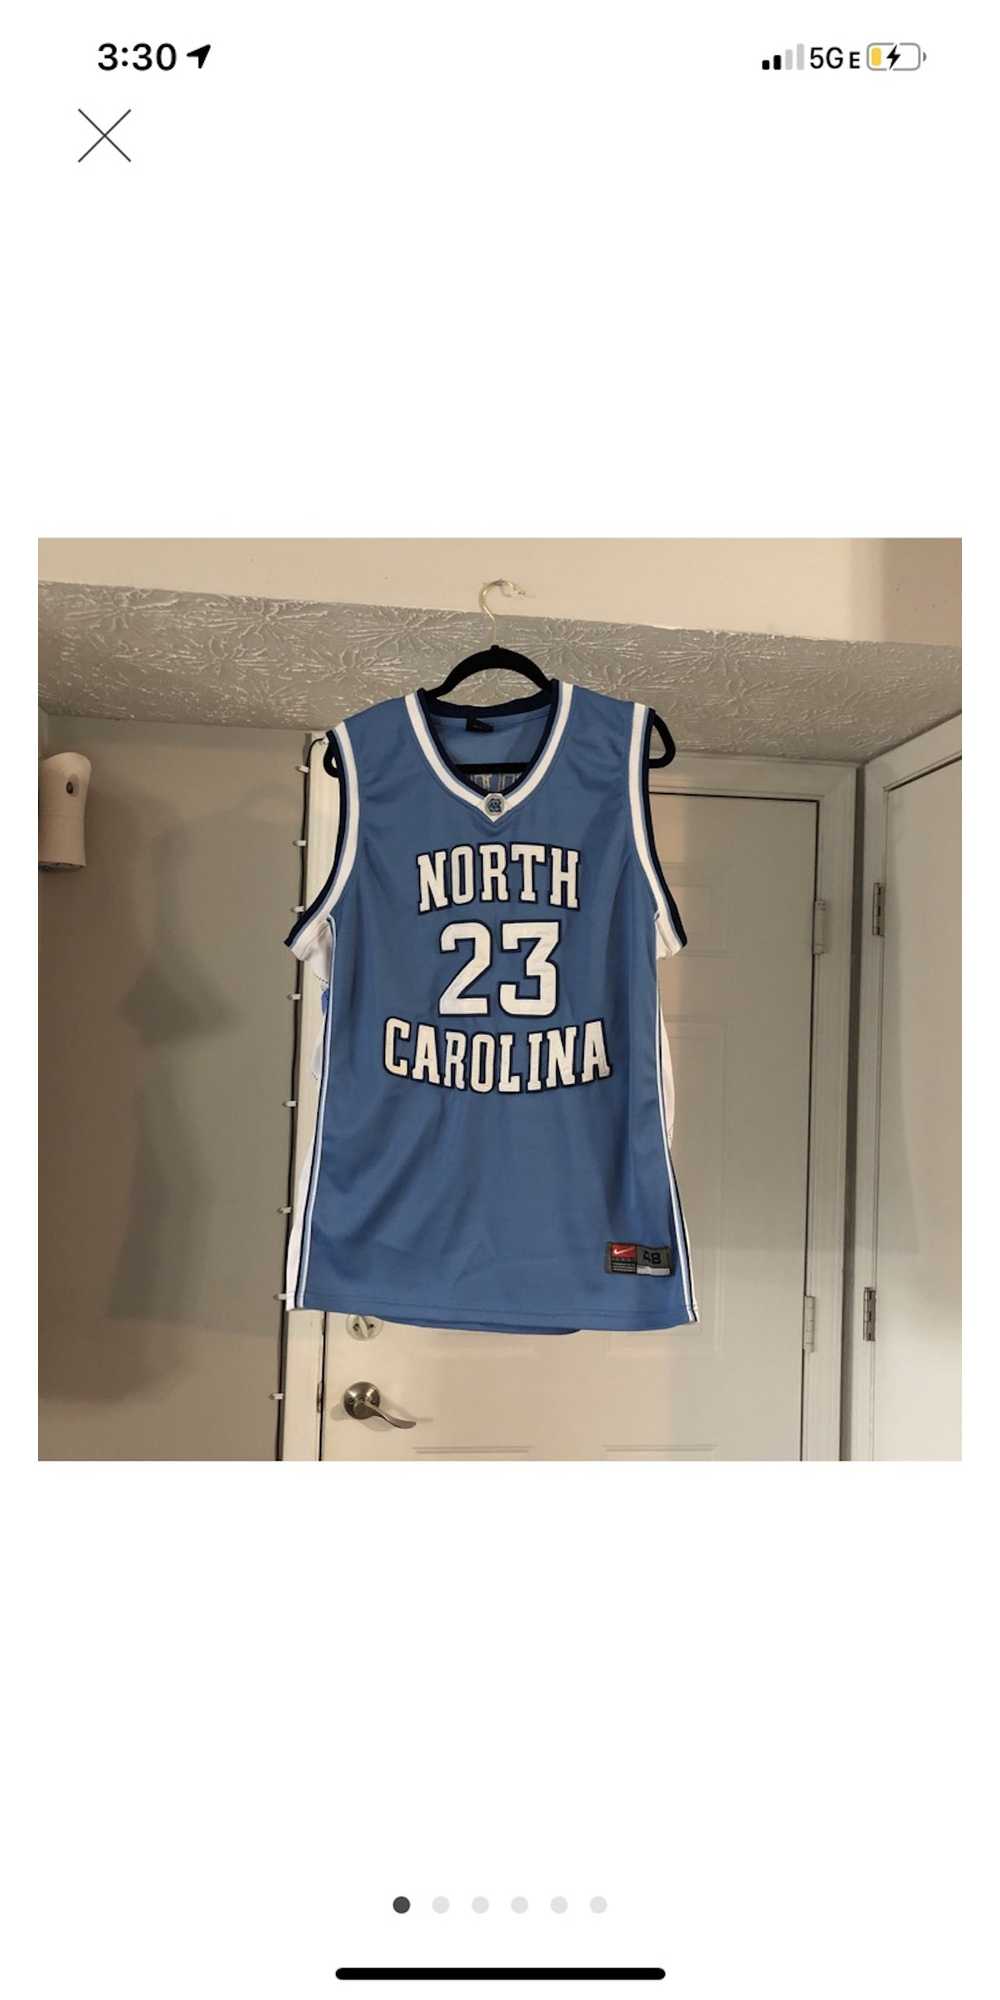 Nike Jordan North Carolina collage Jersey - image 1